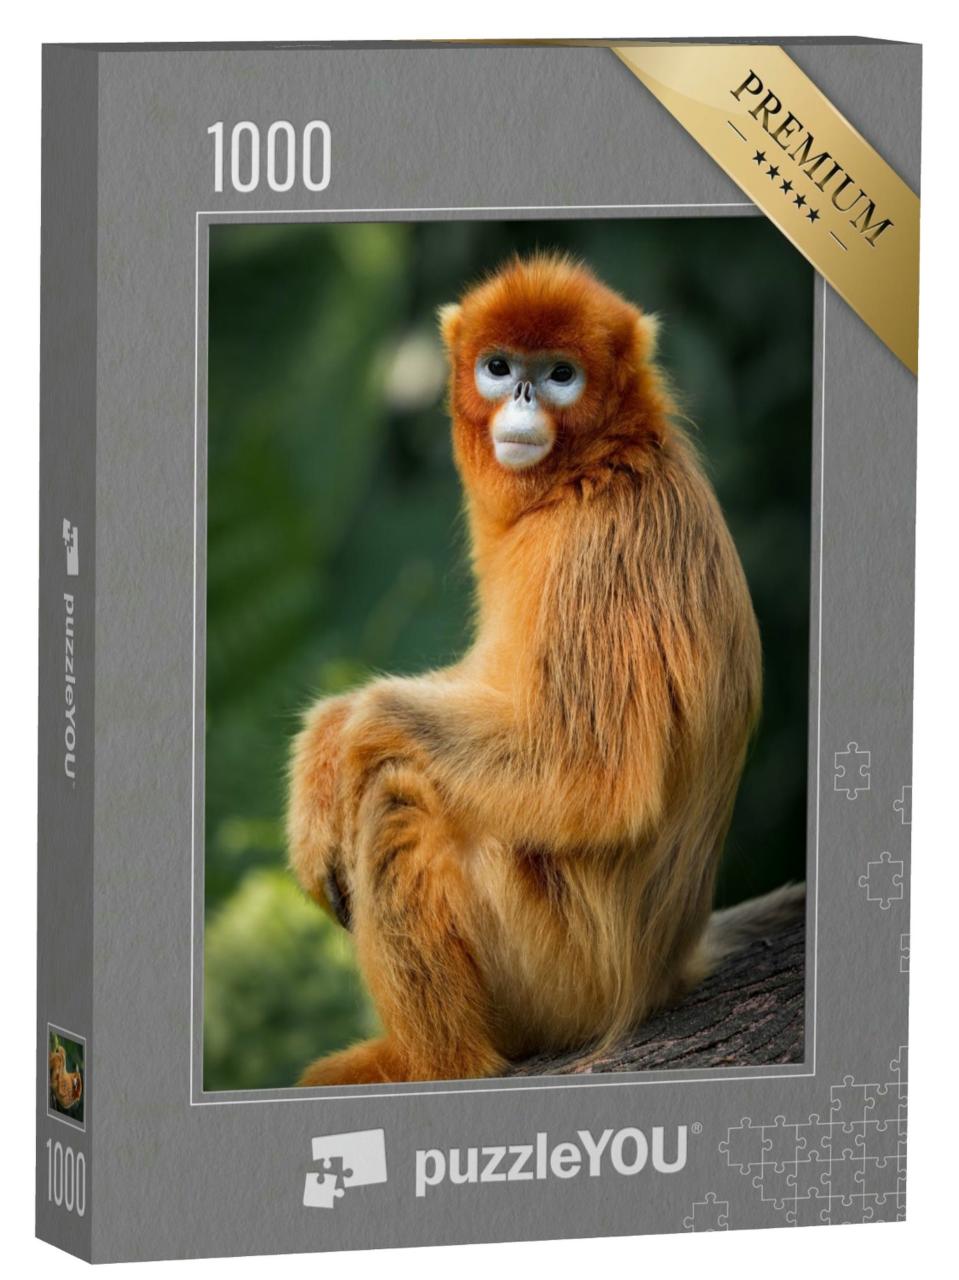 Puzzle 1000 Teile „Das Porträt des stupsnasigen Affen“